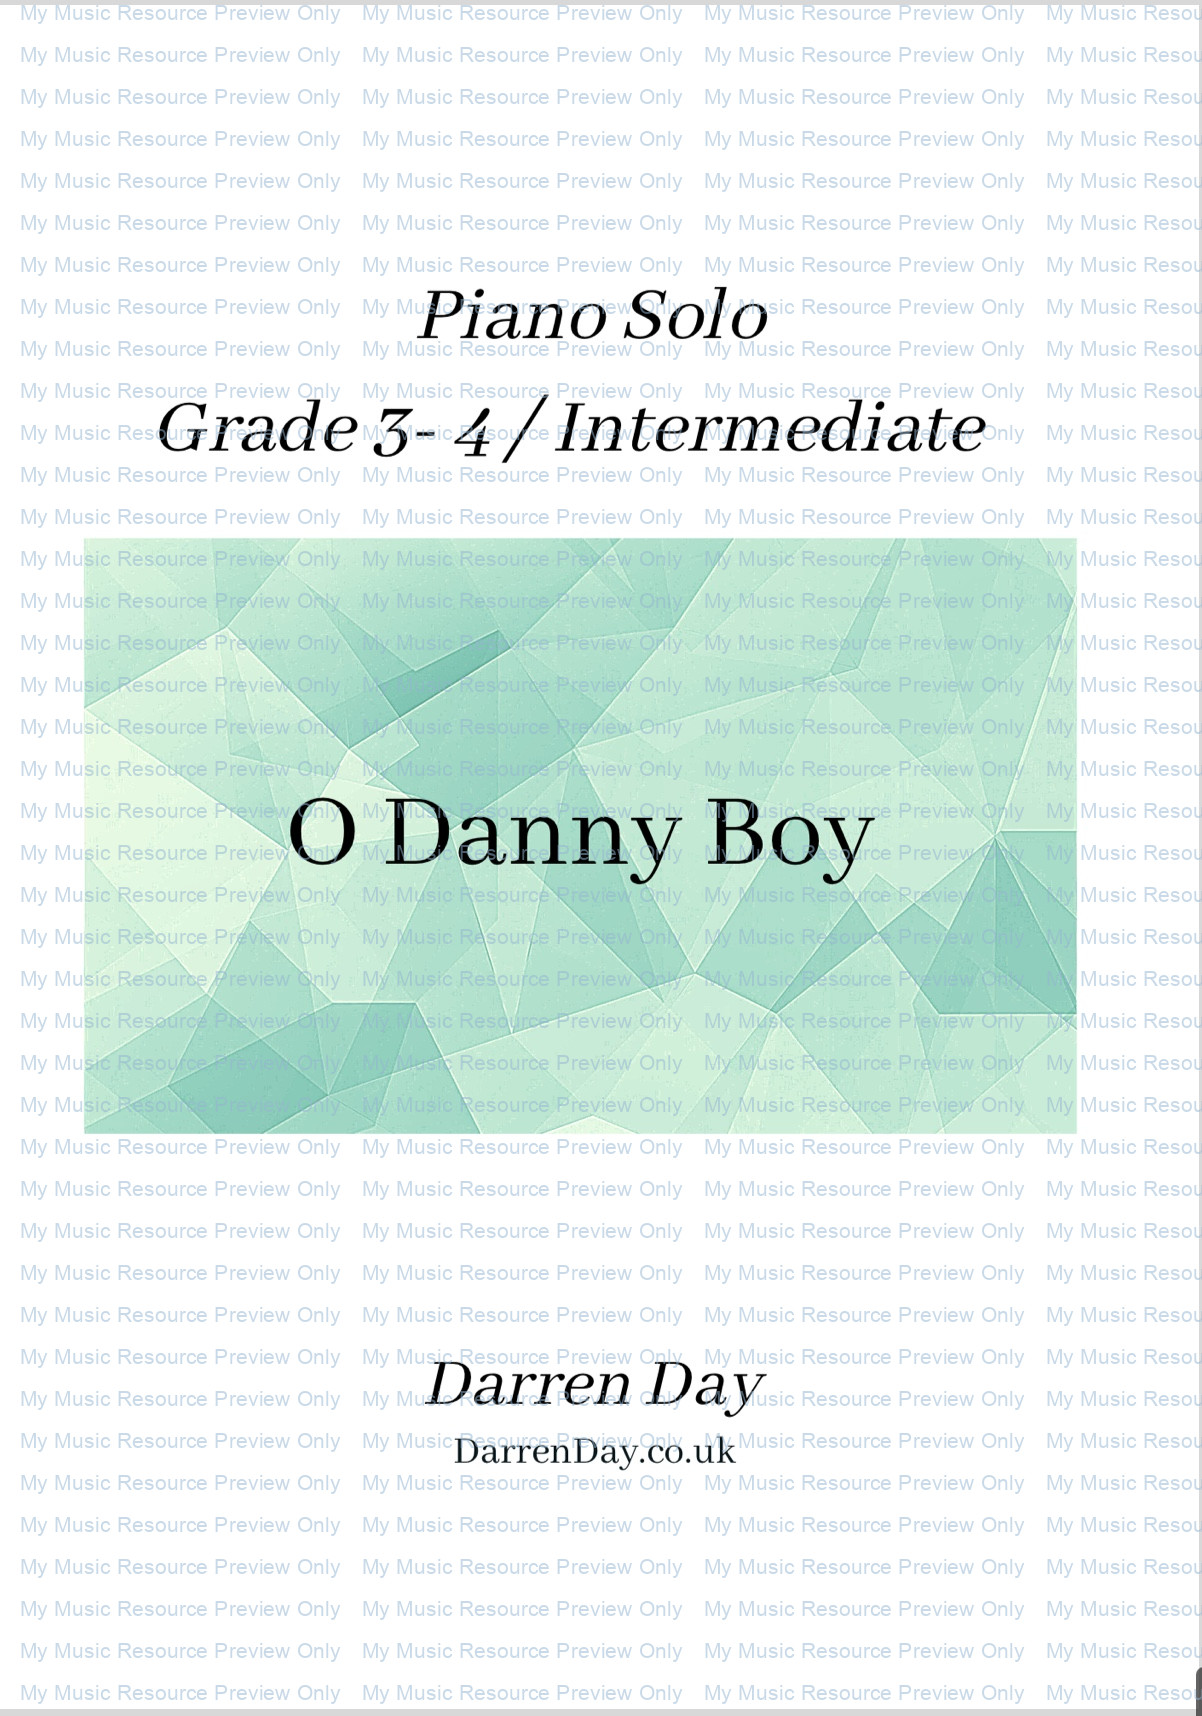 O Danny Boy intermediate Cover